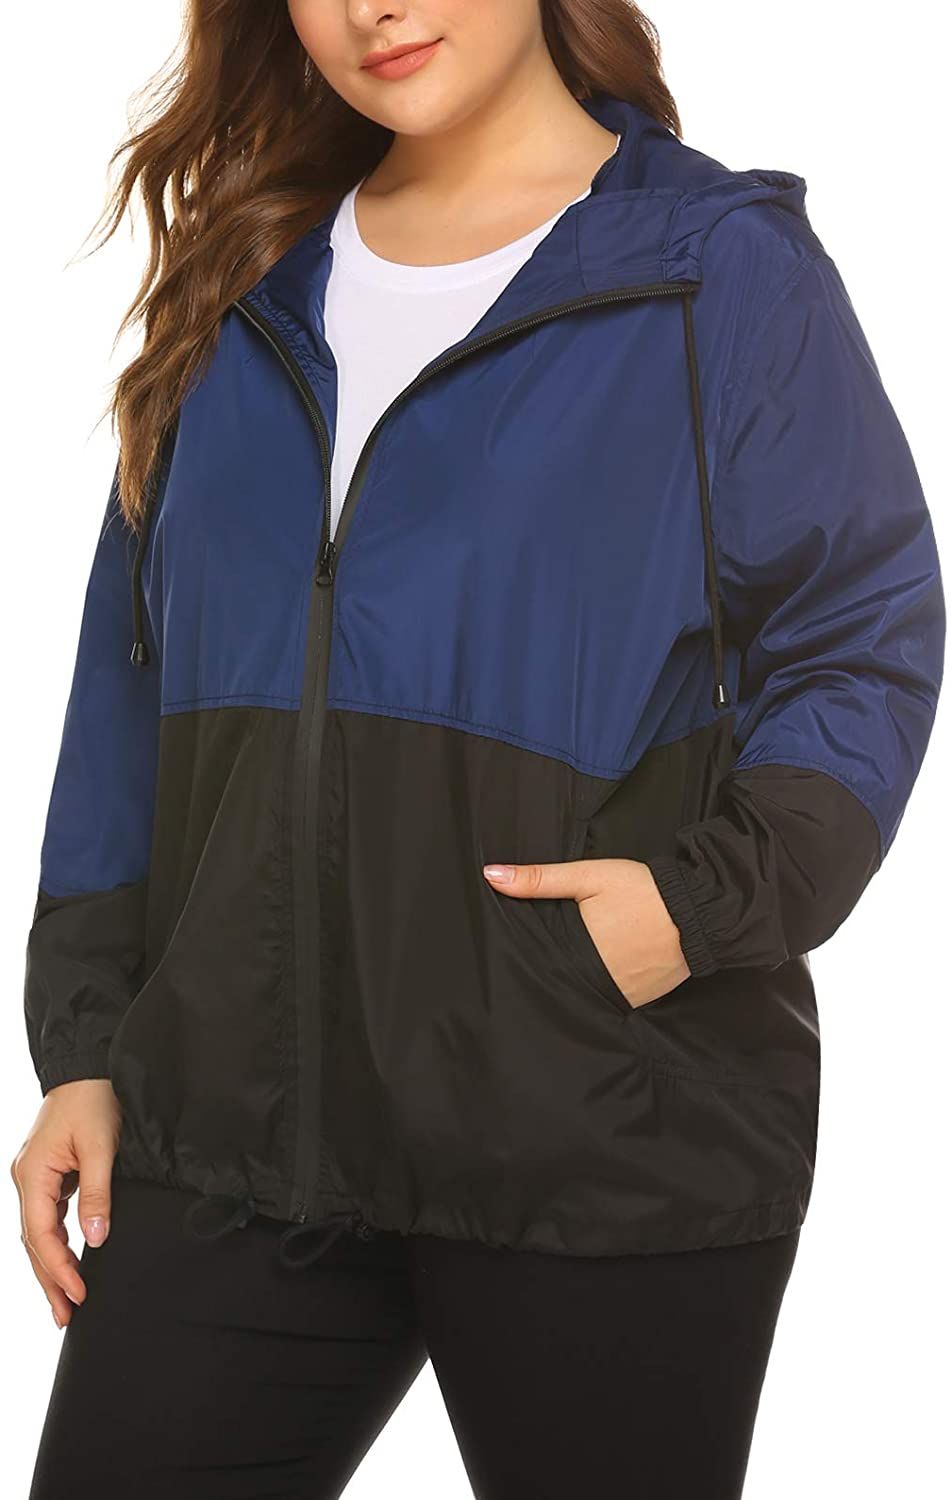 Windbreakers,Womens Waterproof Raincoat Rose Hooded Zip up Windbreaker Pockets Jacket Sport Coat Windproof Outwear